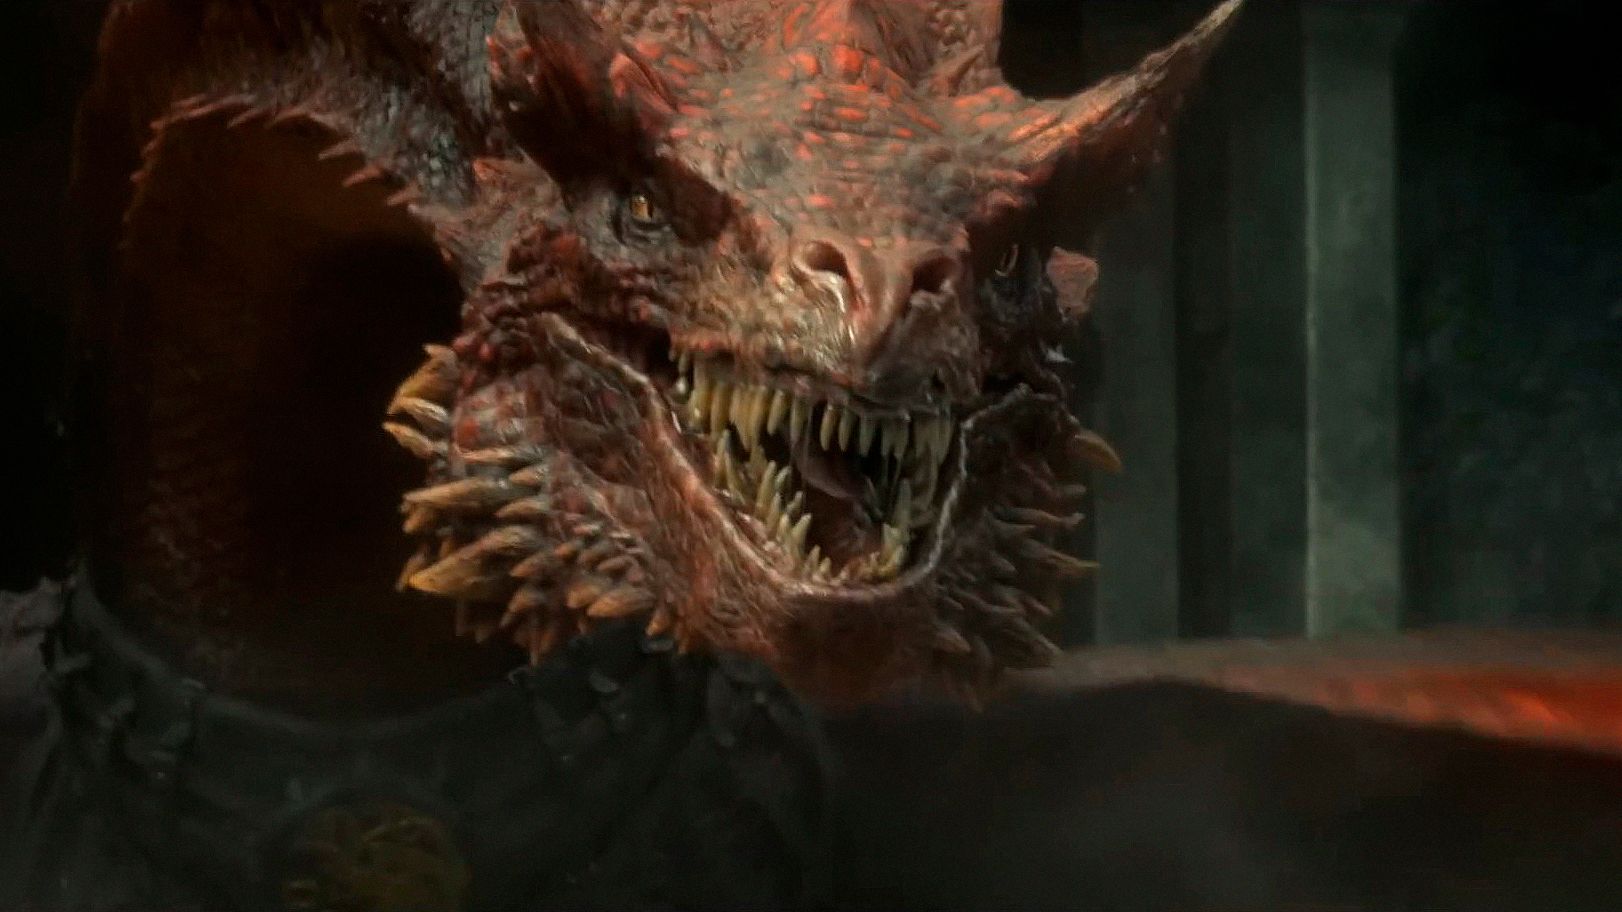 La casa del dragón': HBO pone fecha de estreno a la segunda temporada